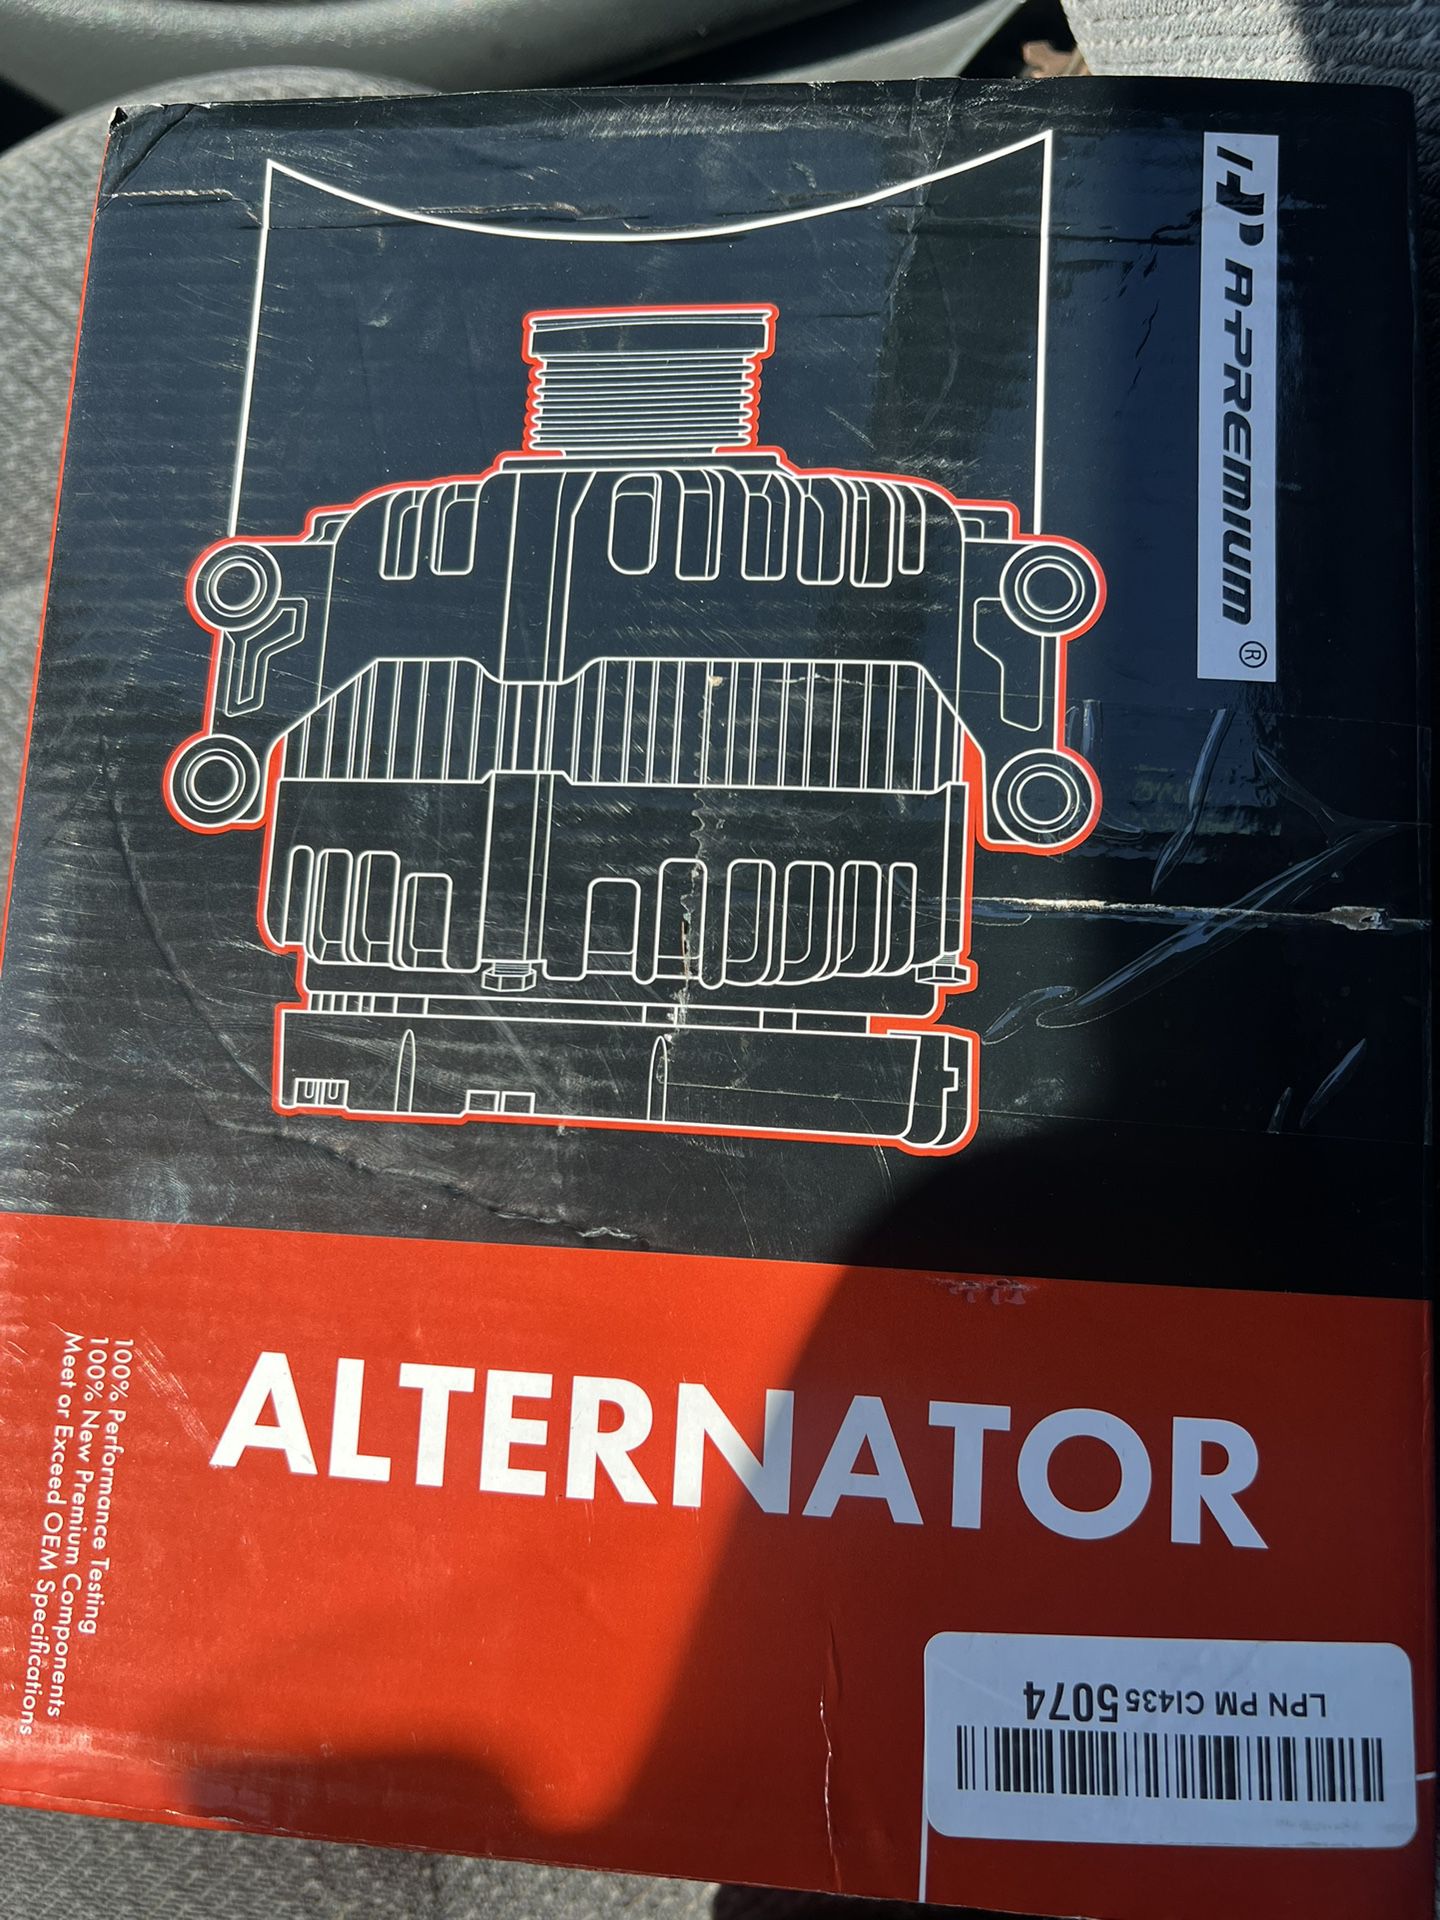 A Premium Alternator